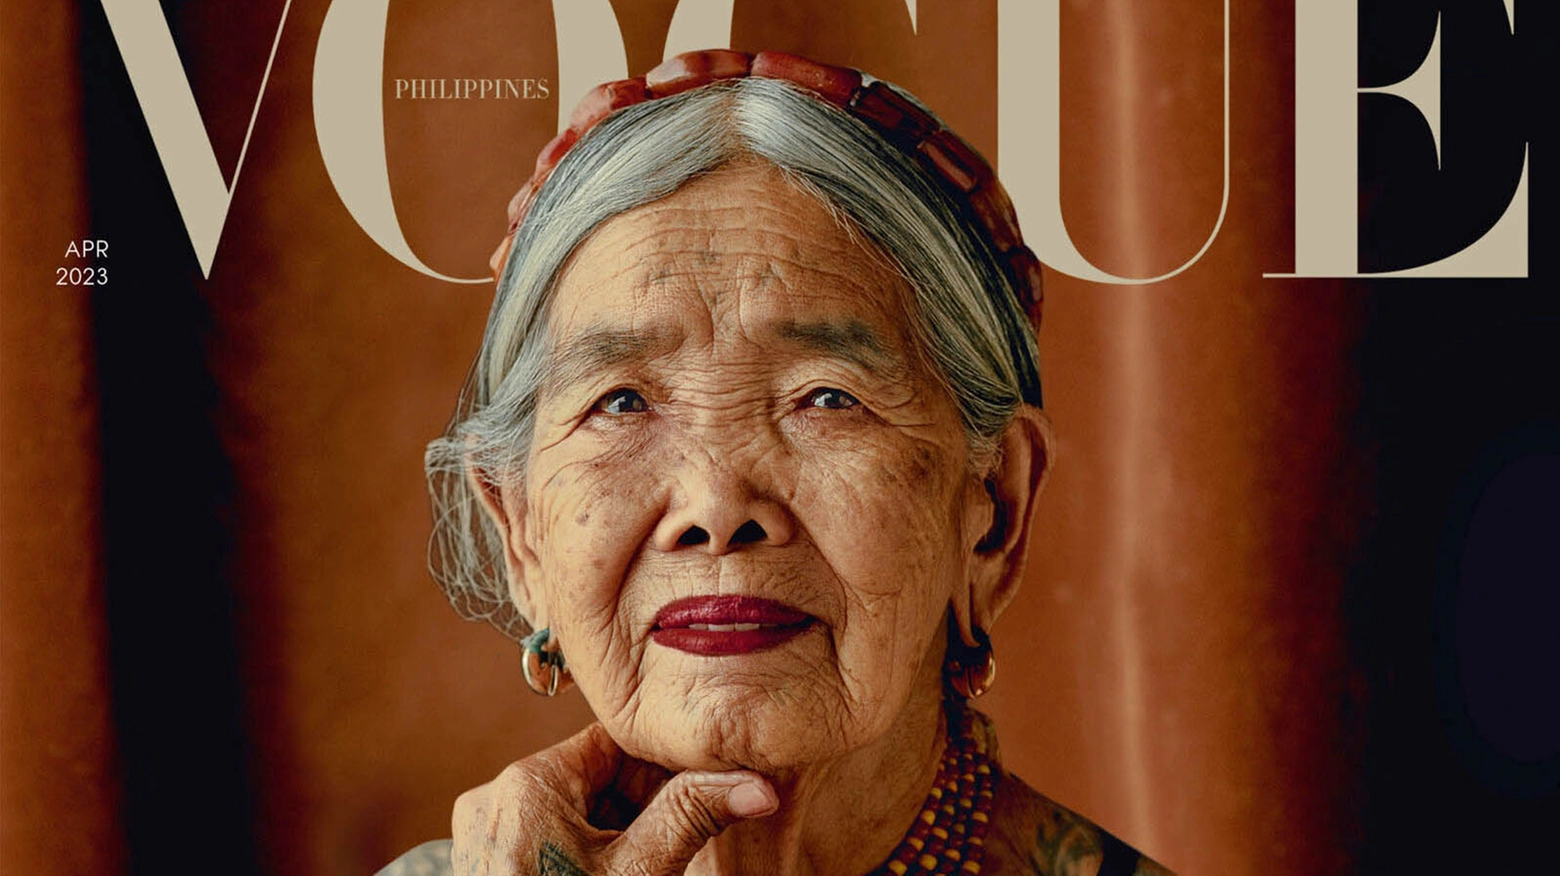 Apo Whang-Od sulla copertina di Vogue Philippines 